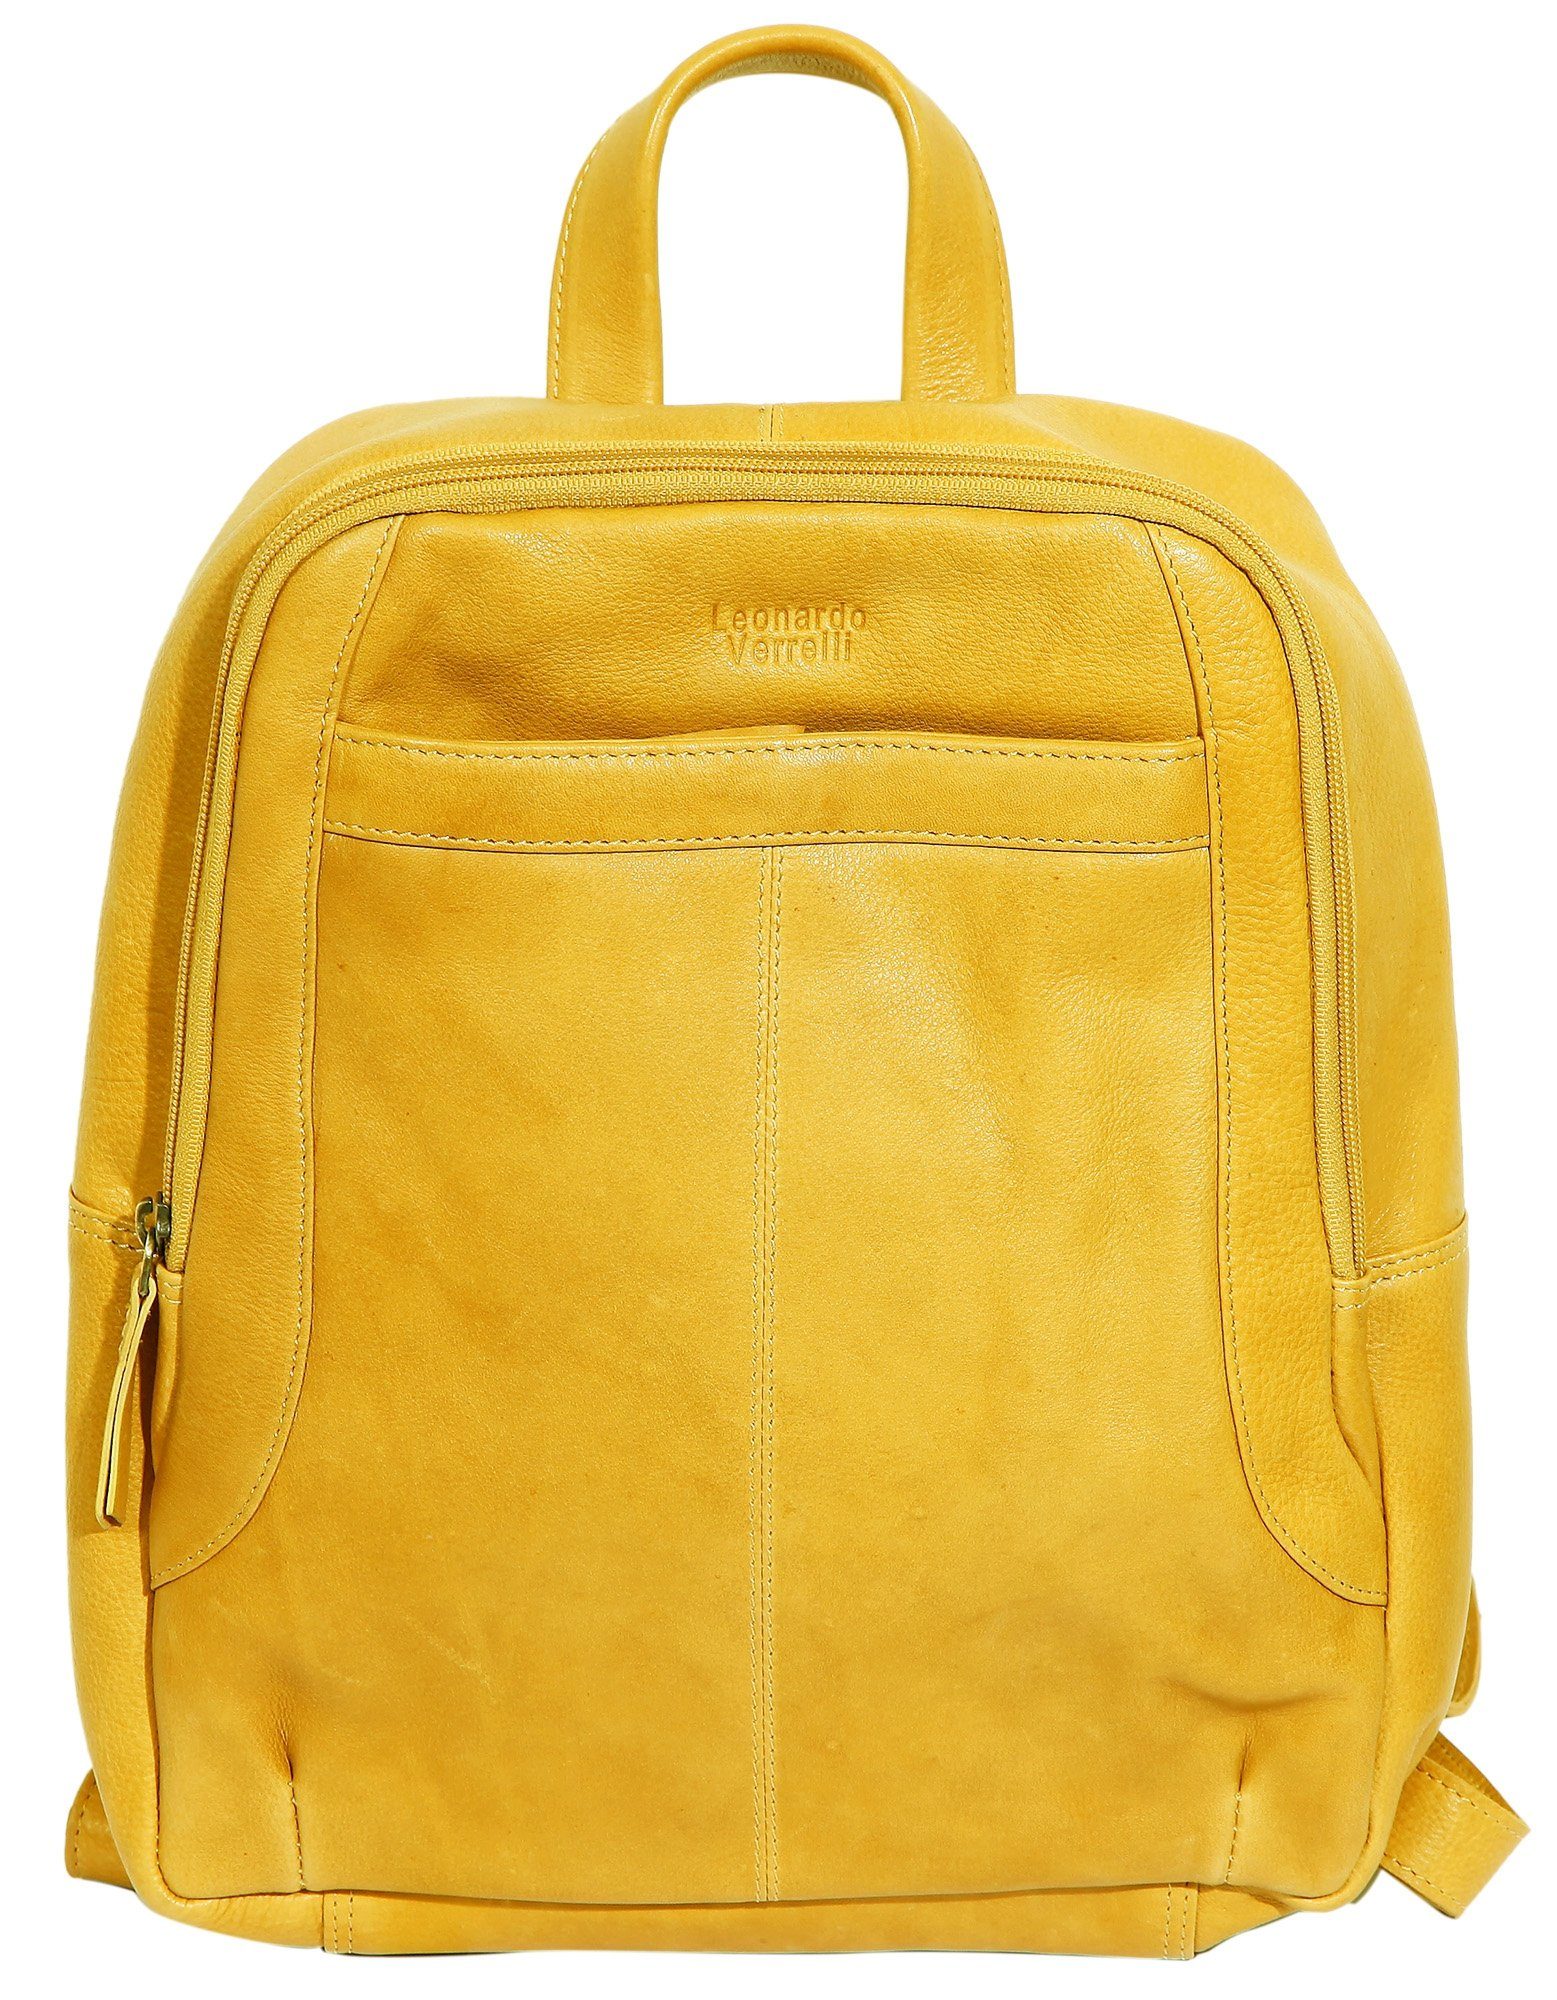 LEONARDO VERRELLI Rucksack Gulnar Damentasche Damenrucksack aus Echtleder (einzeln) Gelb